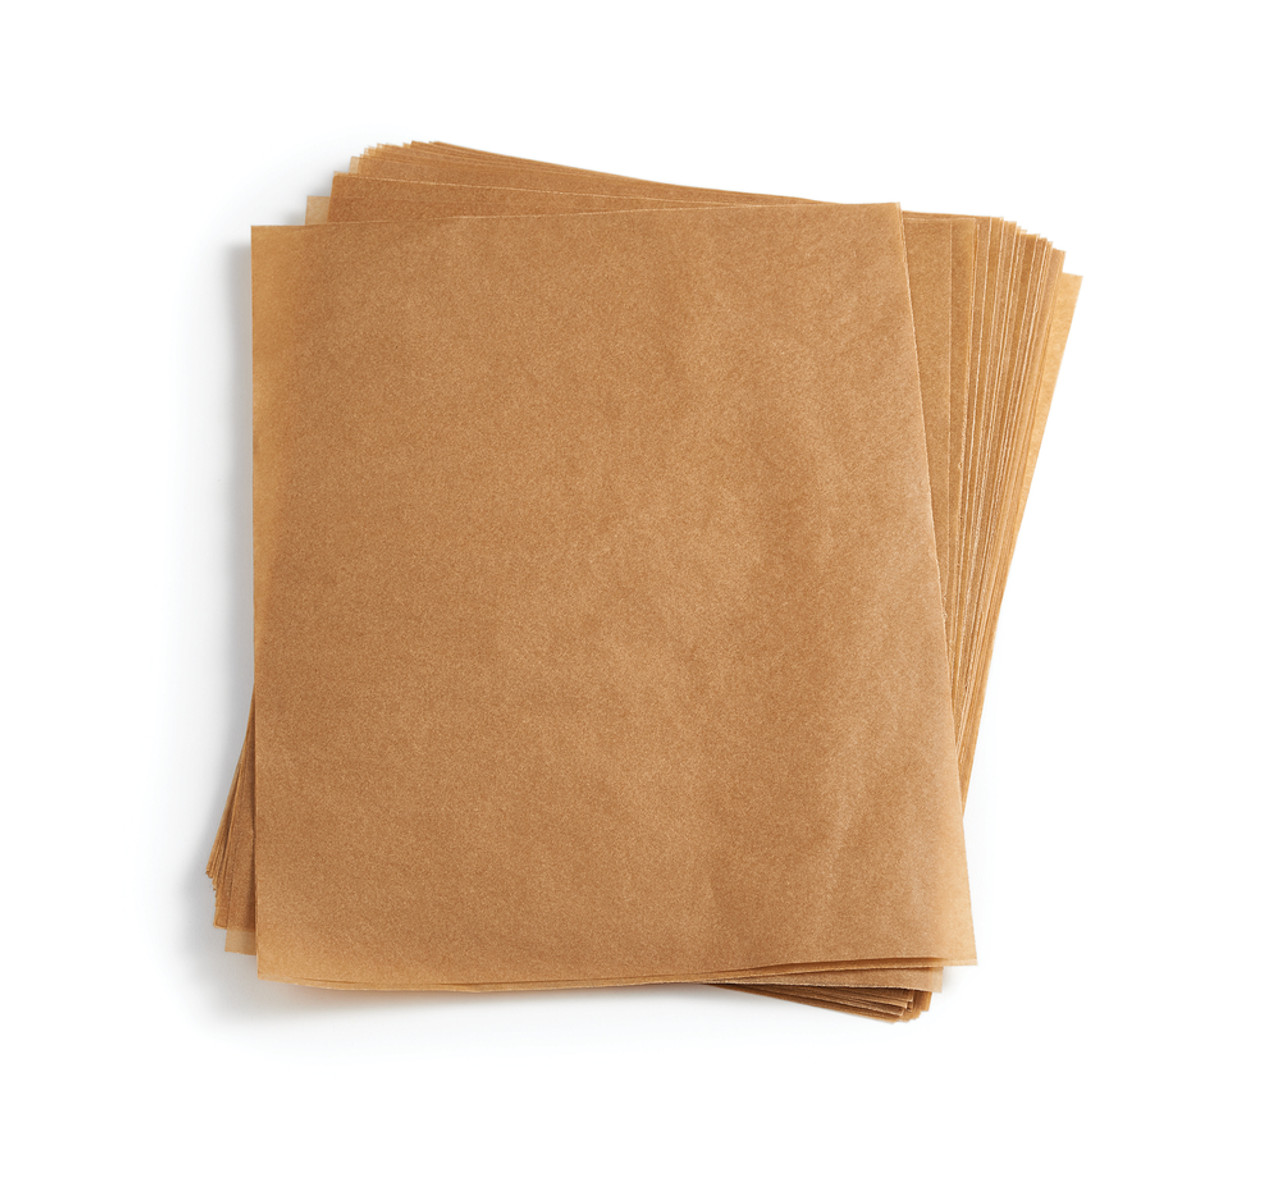 Parchment Paper Pre-Cut 100 PK - Kitchen & Company